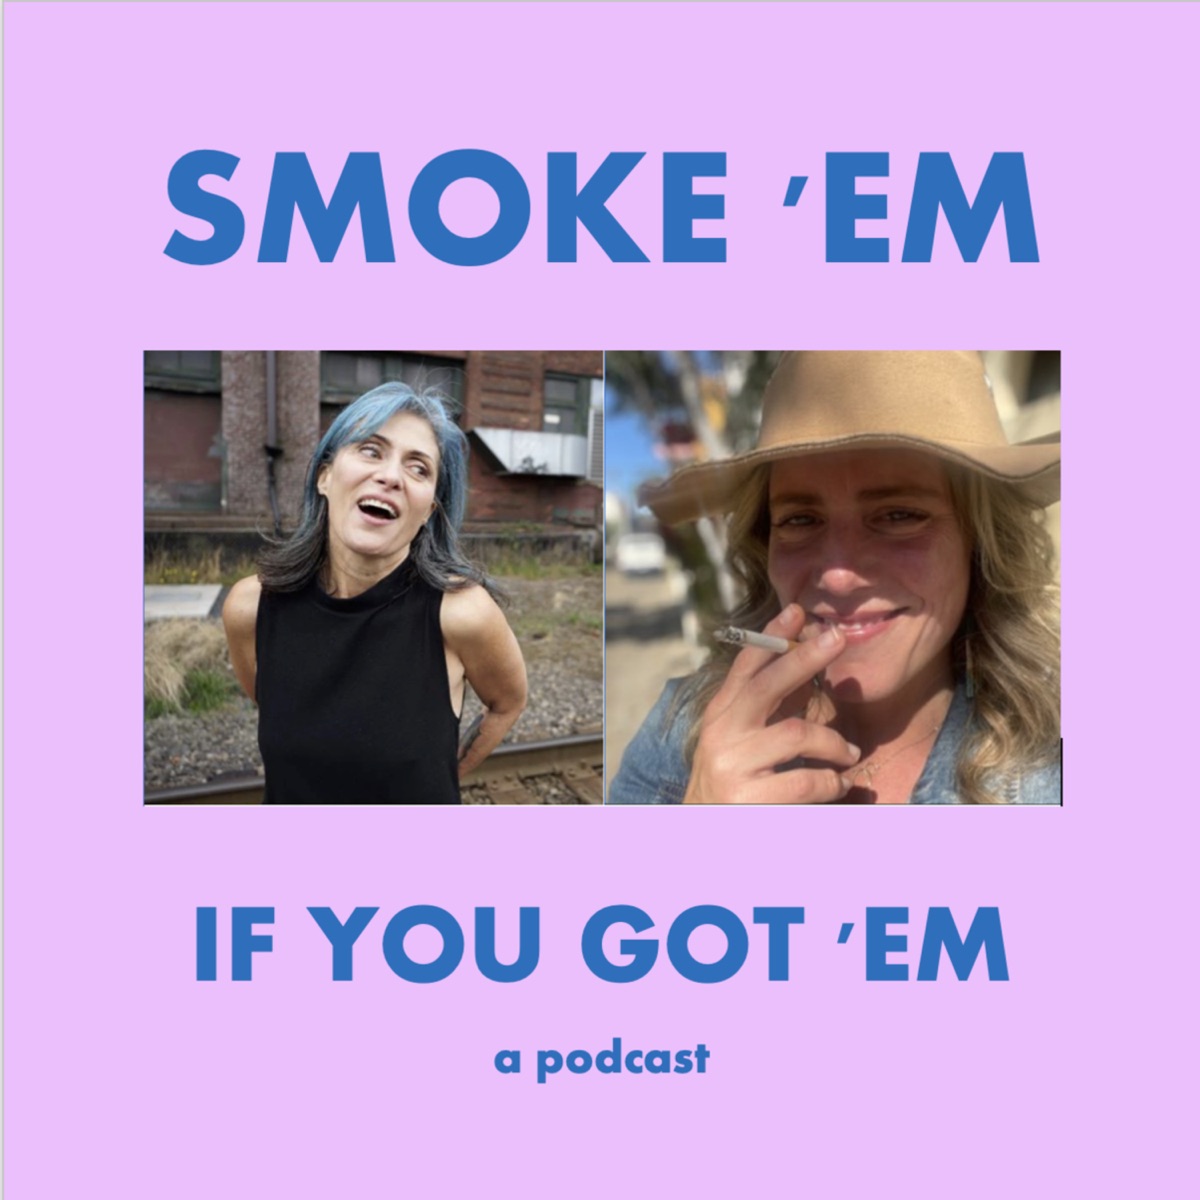 Lisa Vannatta Sex Porn - Smoke 'Em If You Got 'Em Podcast â€“ Podcast â€“ Podtail